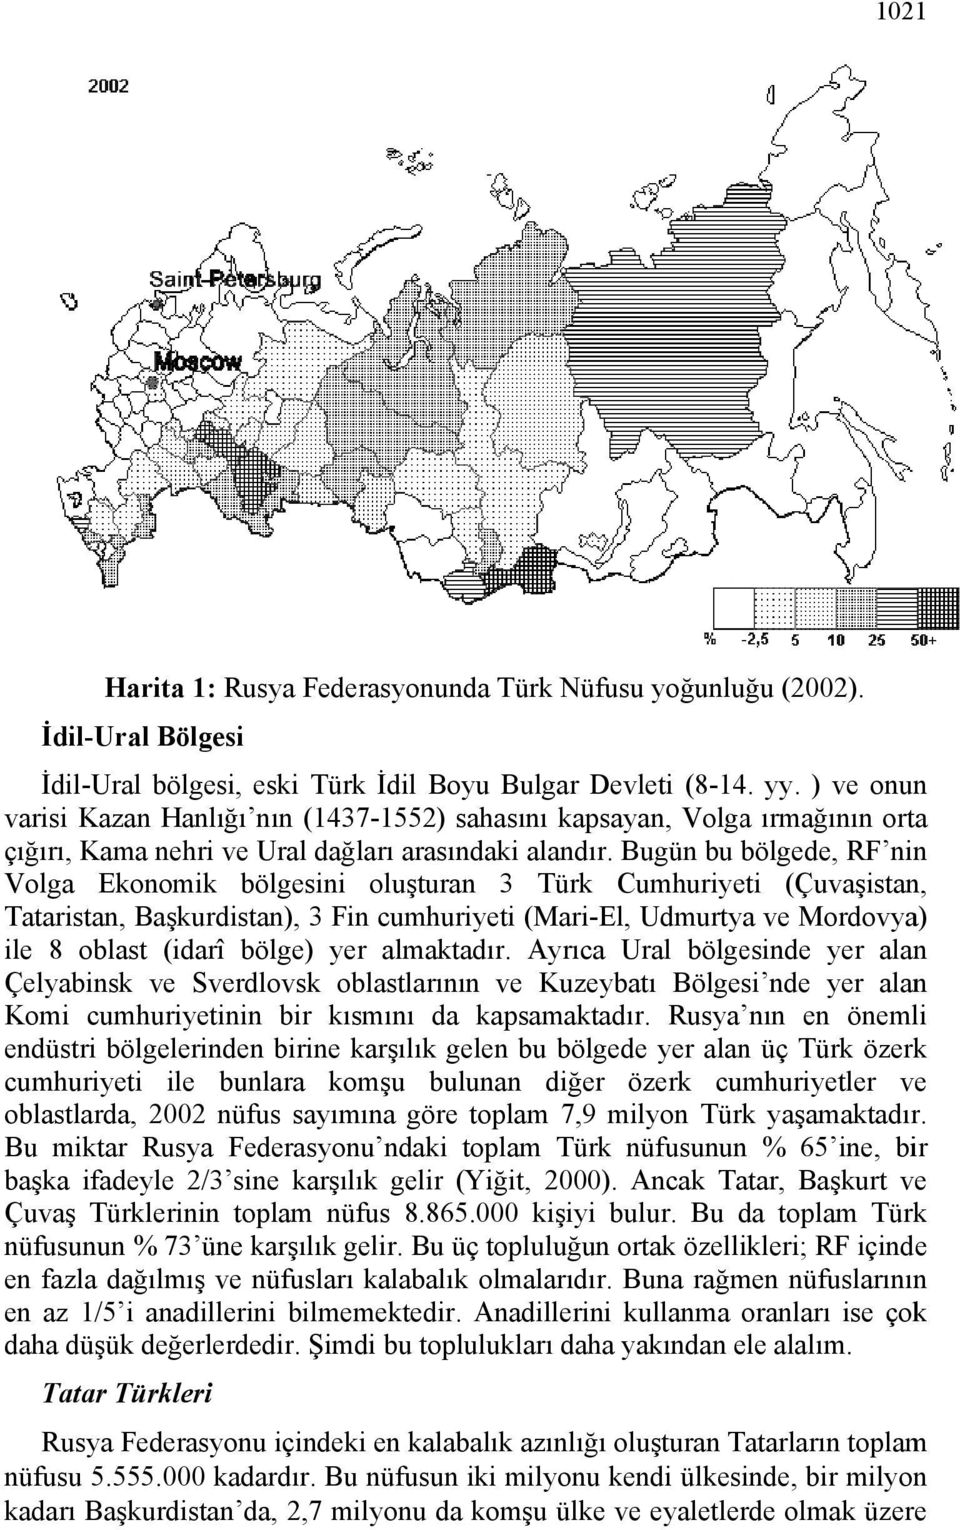 Bugün bu bölgede, RF ninn Volga Ekonomik bölgesini oluşturan 3 Türk Cumhuriyeti (Çuvaşistan, Tataristan, Başkurdistan), 3 Fin cumhuriyeti (Mari-El, Udmurtya ve Mordovya) ile 8 oblast (idarî bölge)